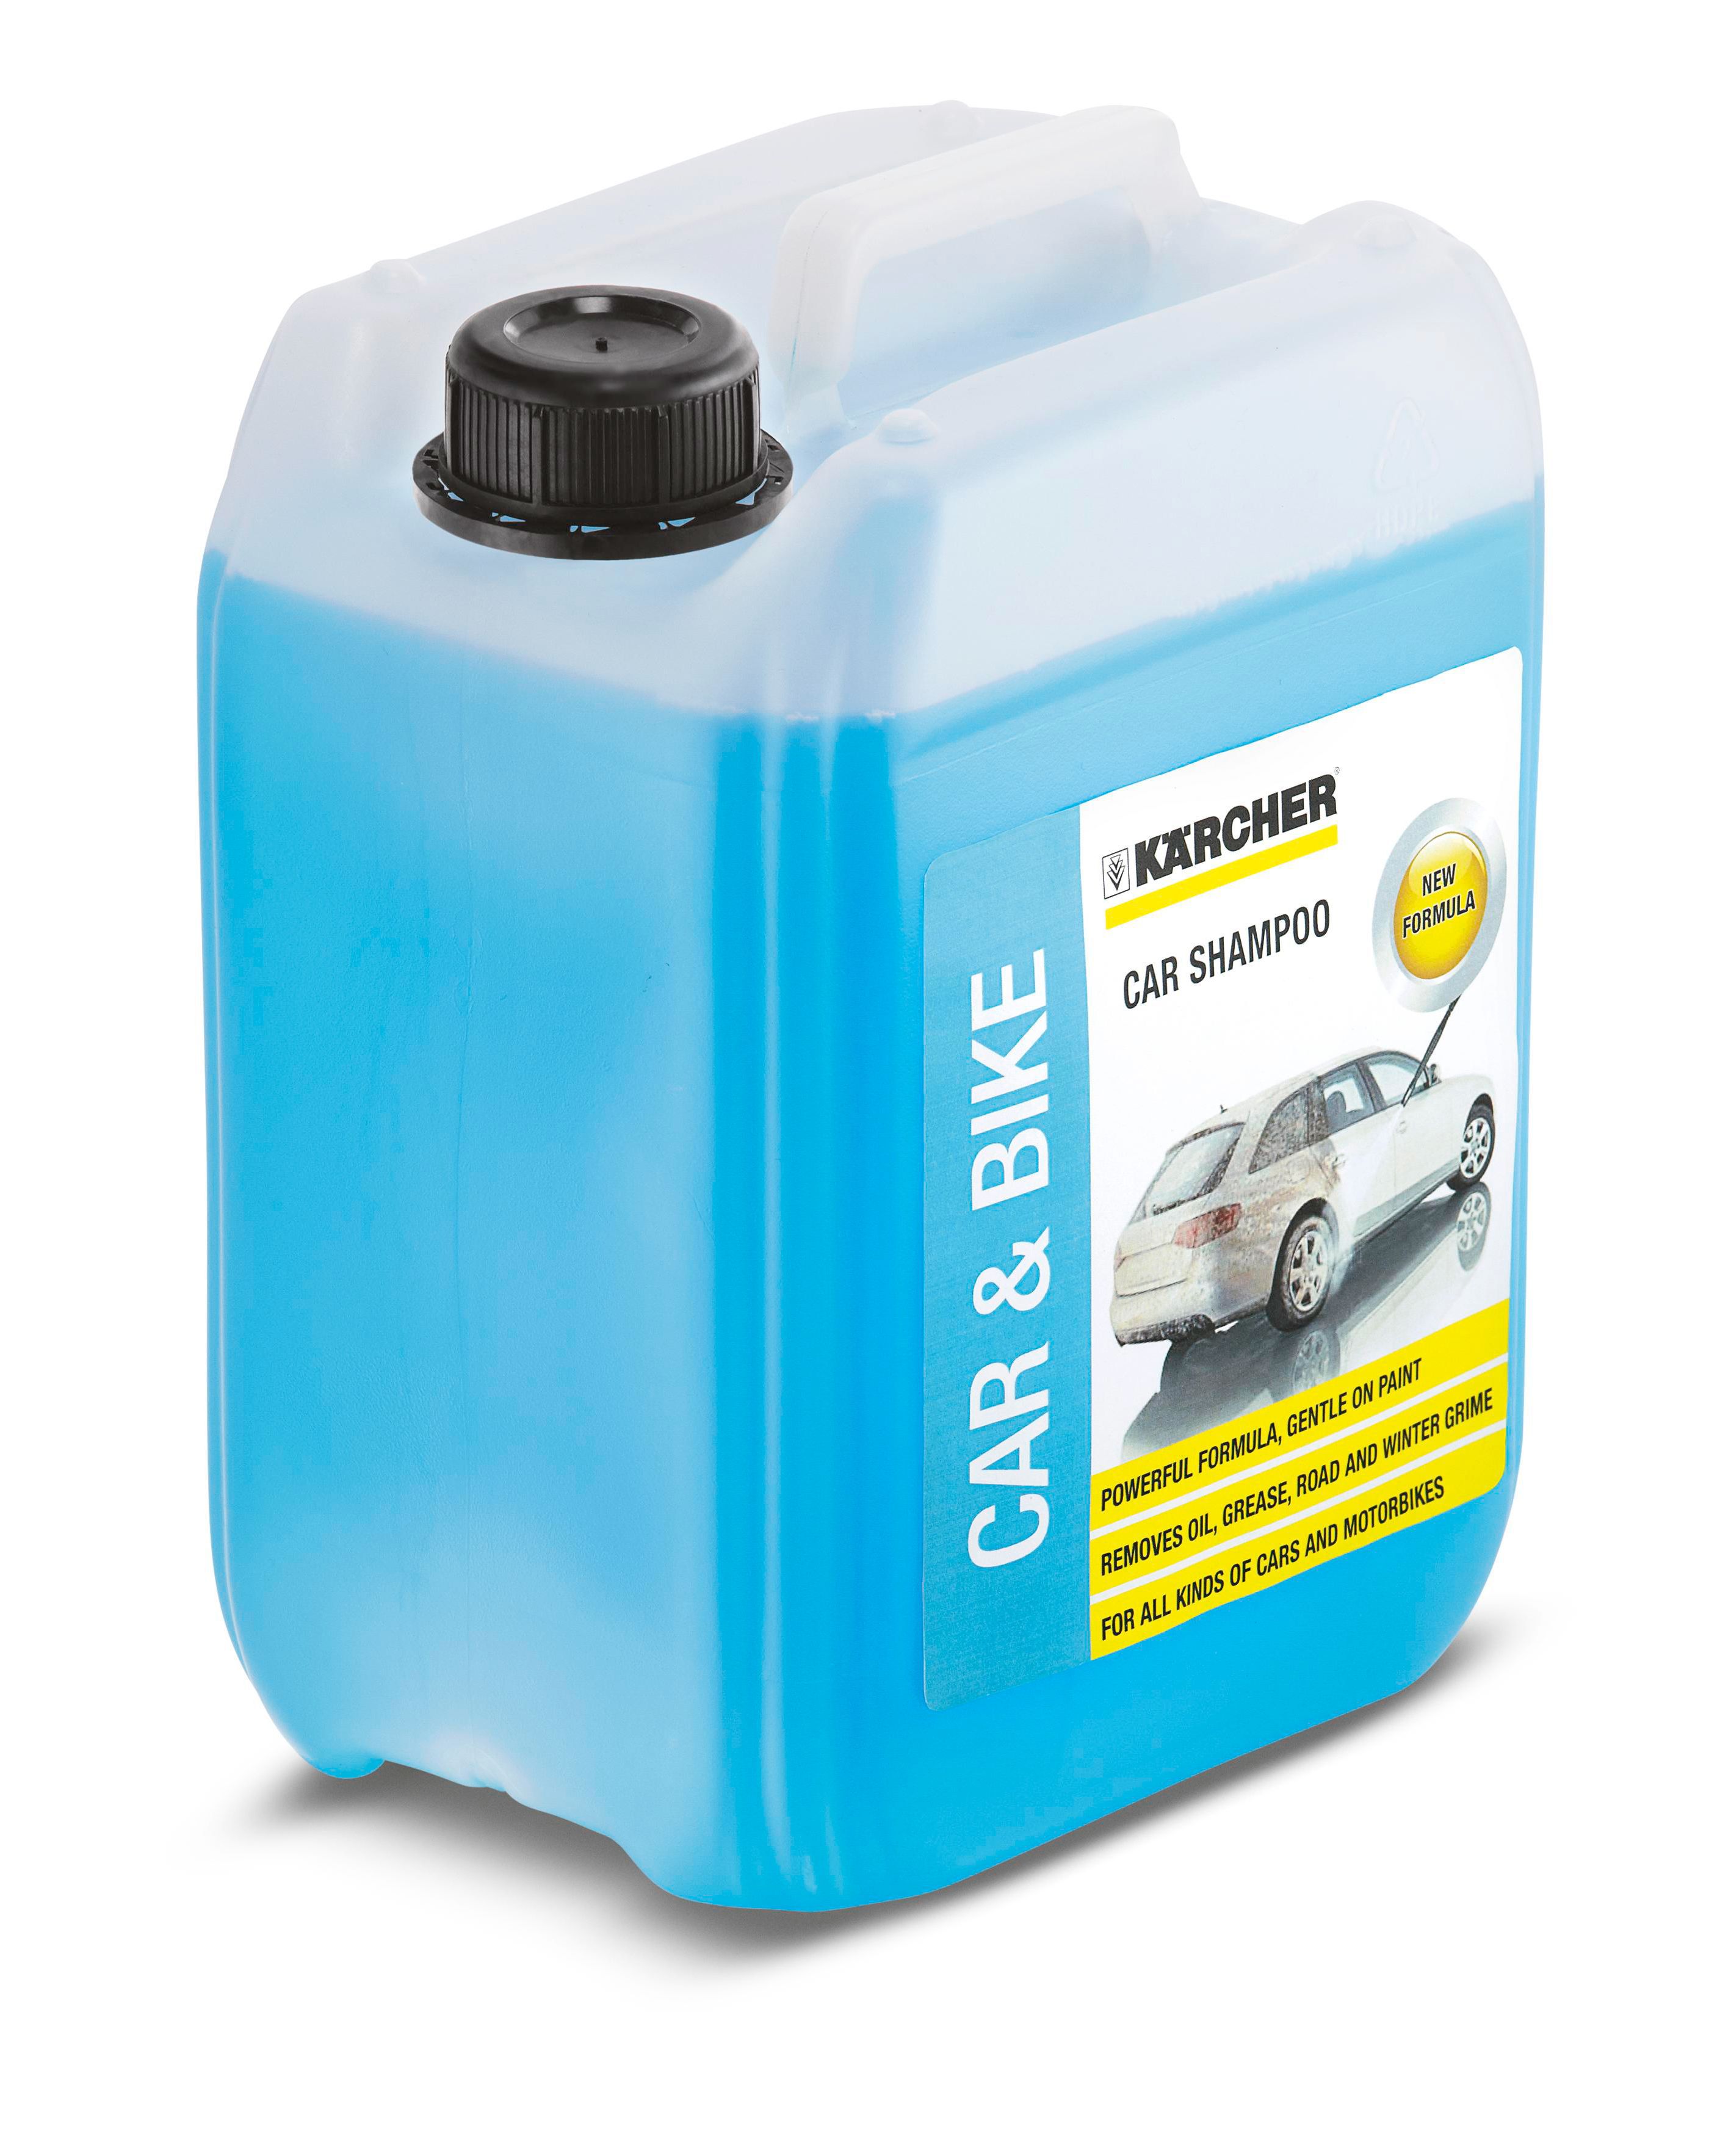 Kärcher Car shampoo, 5L Bottle